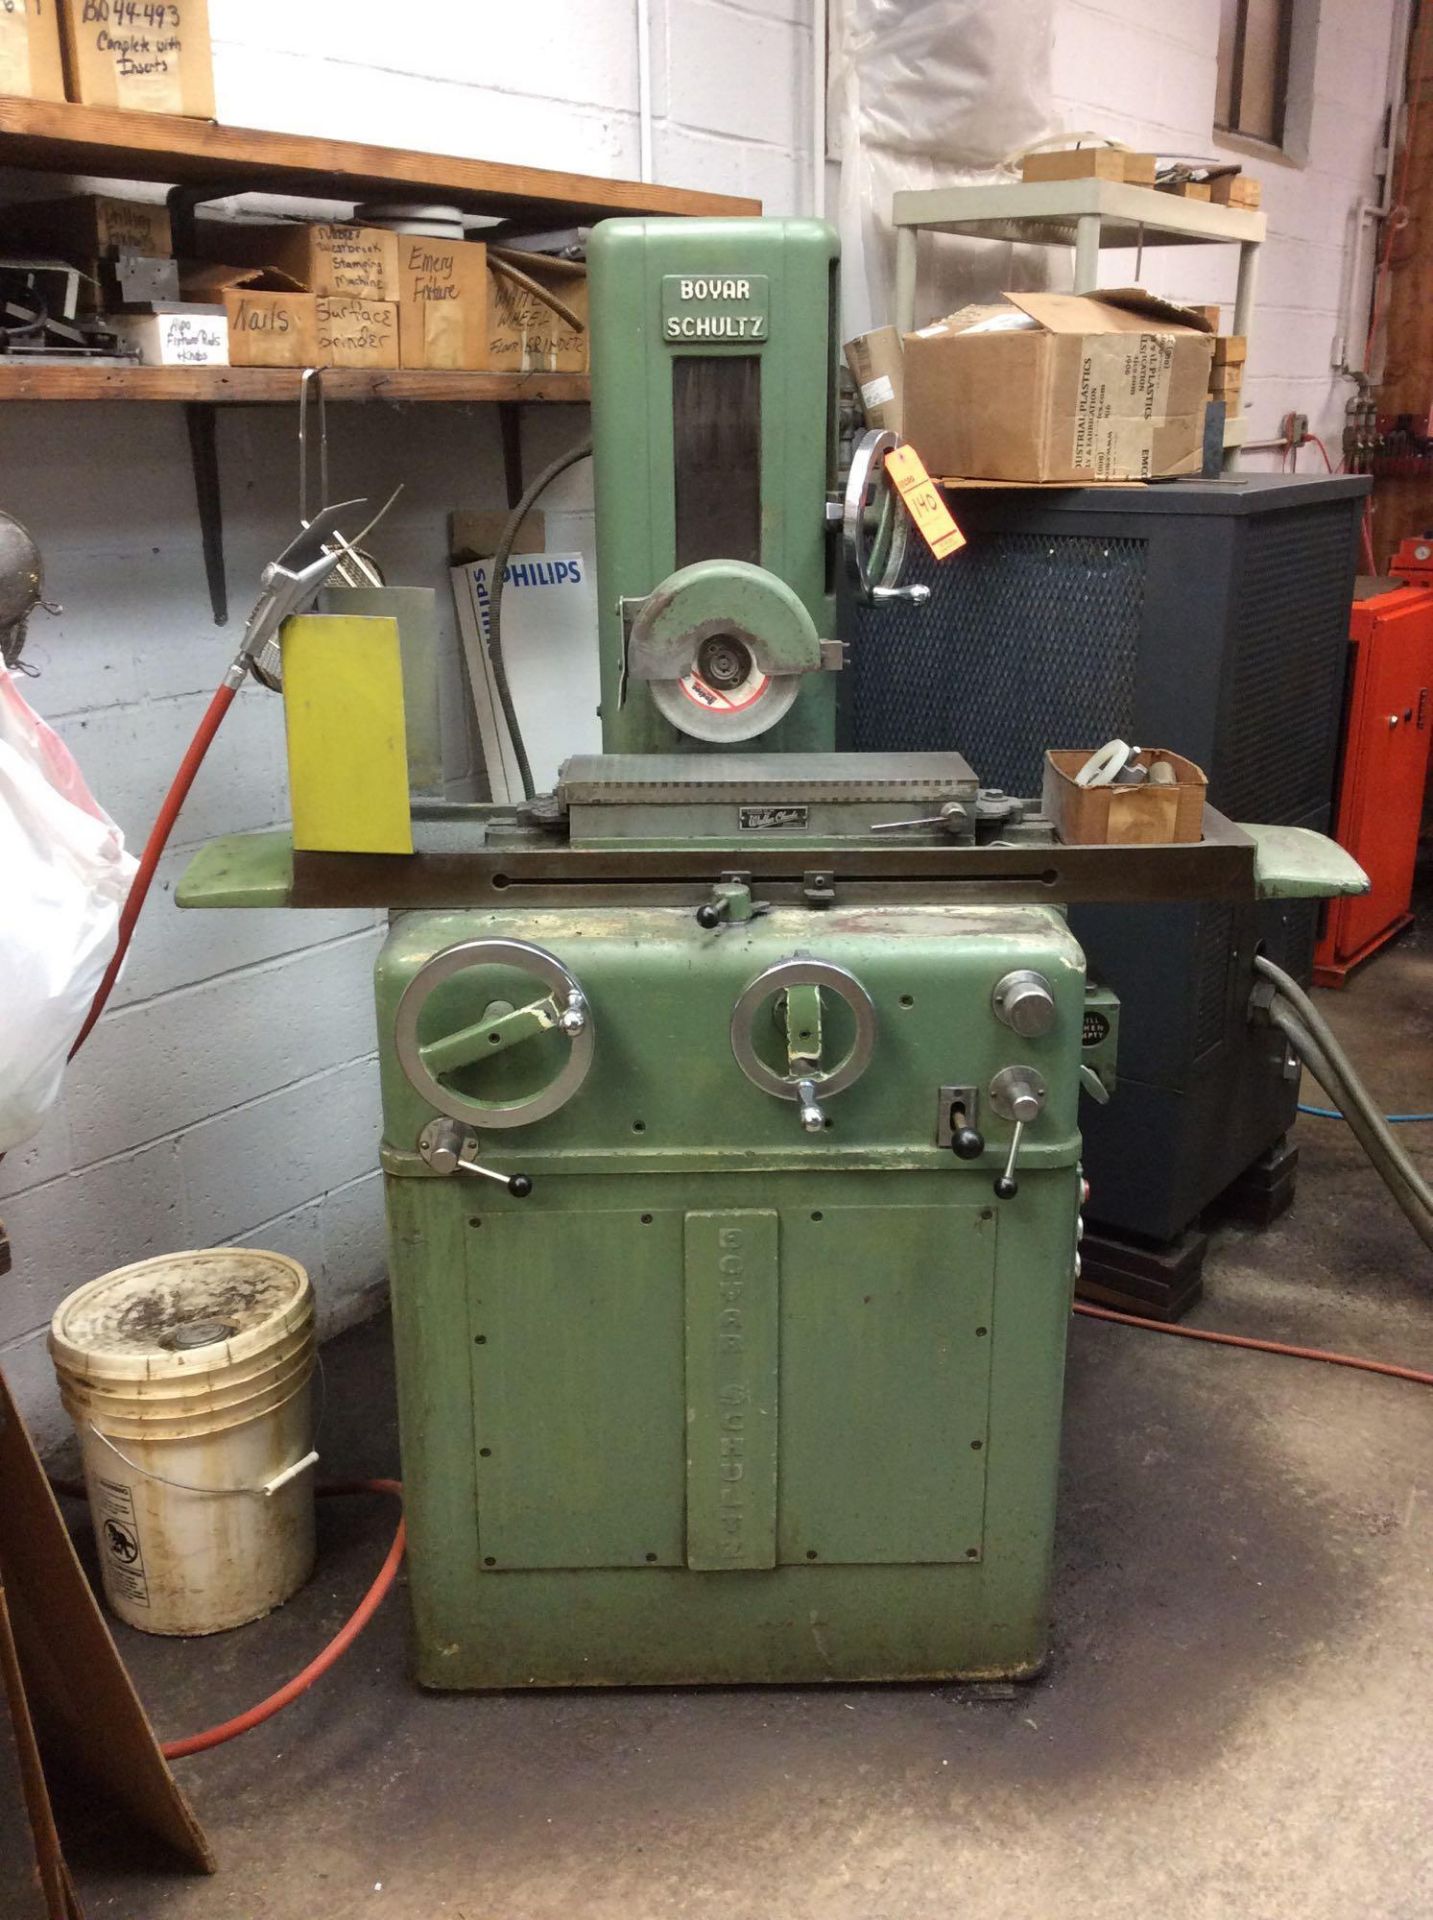 Boyar Schultz surface grinder, 8" wheel, mn 6-18H, sn H-728, 1730 rpm, 1/2 hp, 3 phase, with Walker